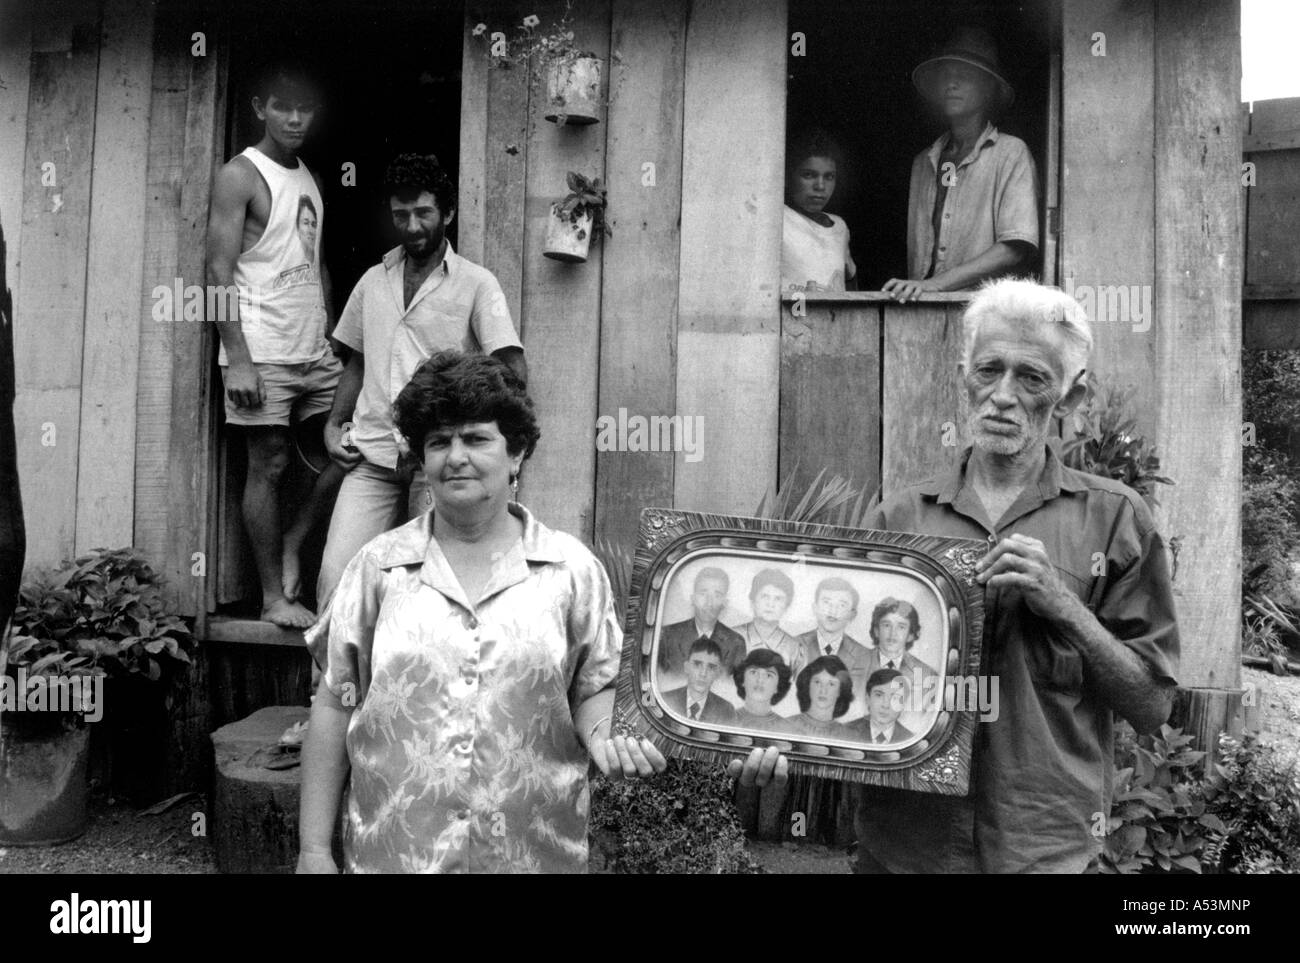 Painet ha1439 264 schwarz-weiß Familie Rodonia Brasilien Land entwickeln Nation weniger wirtschaftlich entwickelten Kultur Stockfoto